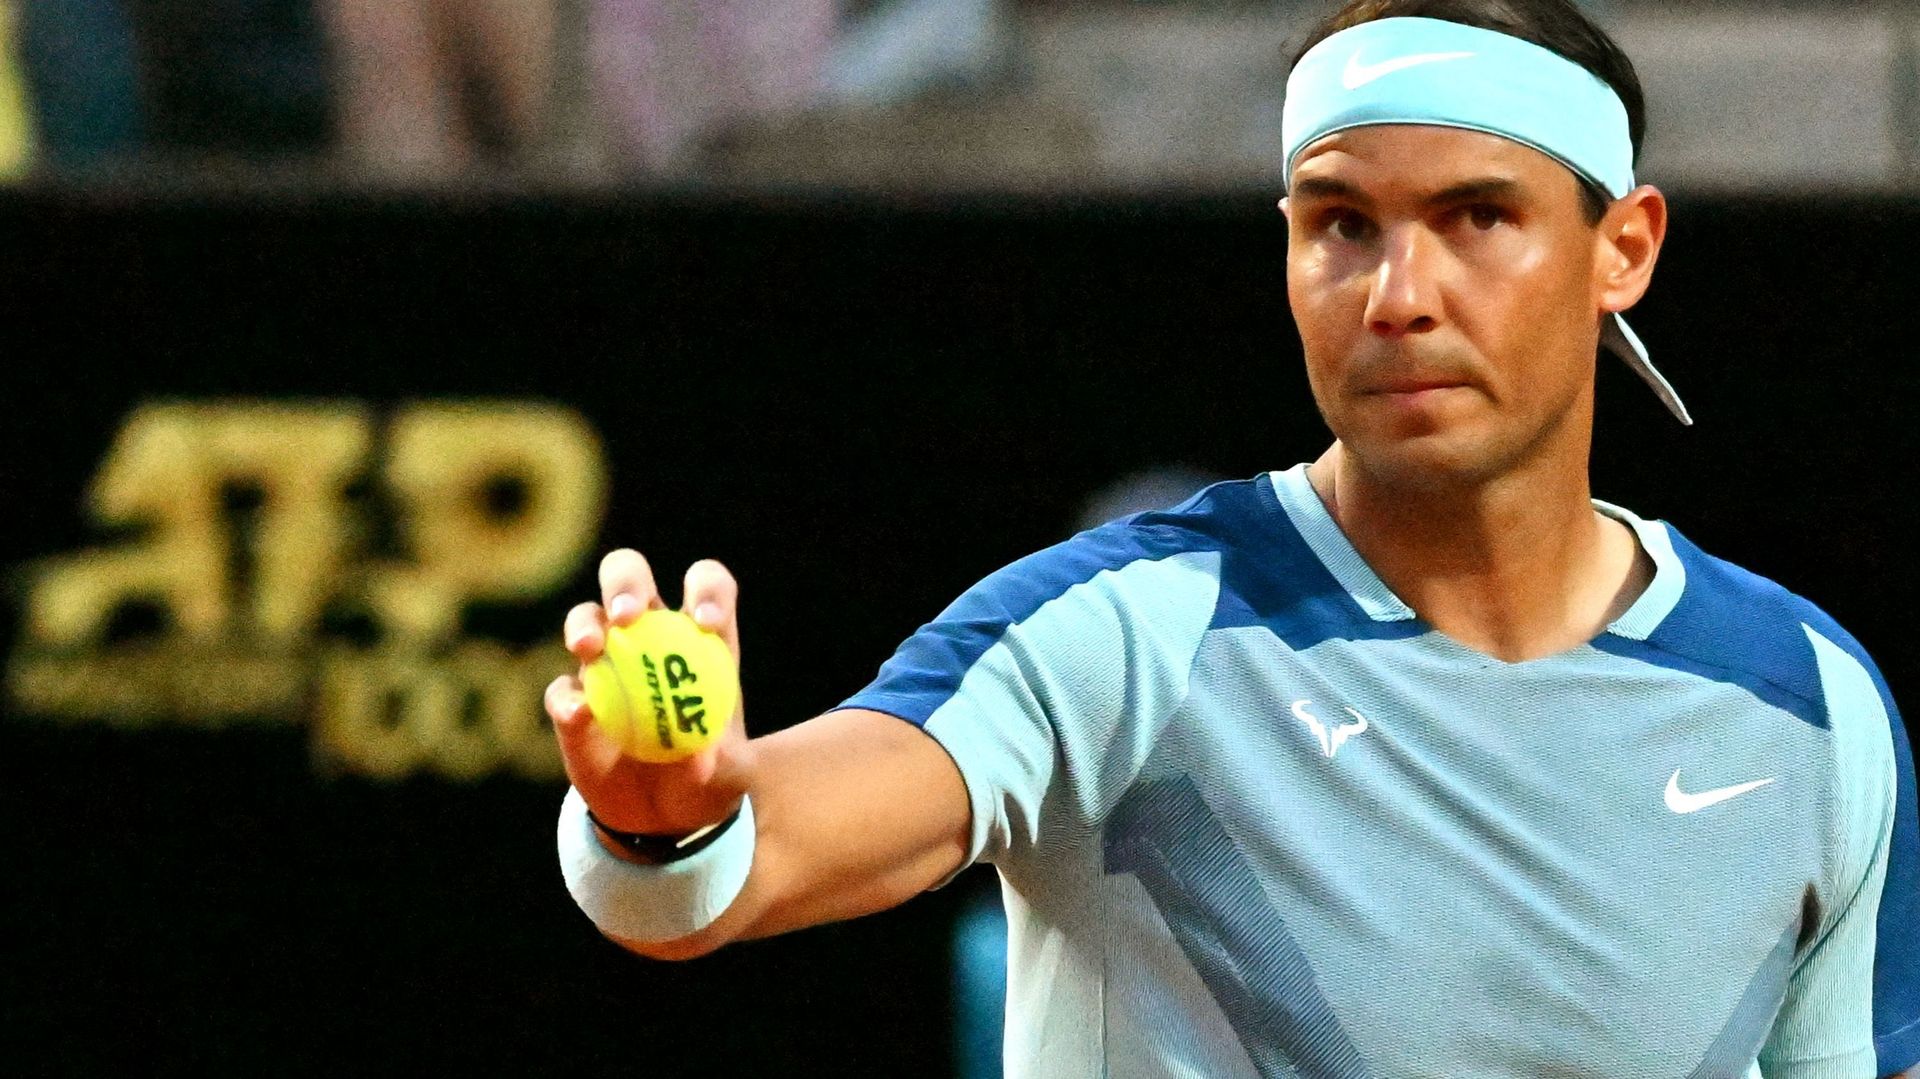 Rafael Nadal a cédé sa quatrième place au classement ATP. Il ne sera donc pas l’une des 4 têtes de série lors de Roland Garros. Un adversaire de poids qui pourrait faire peur.